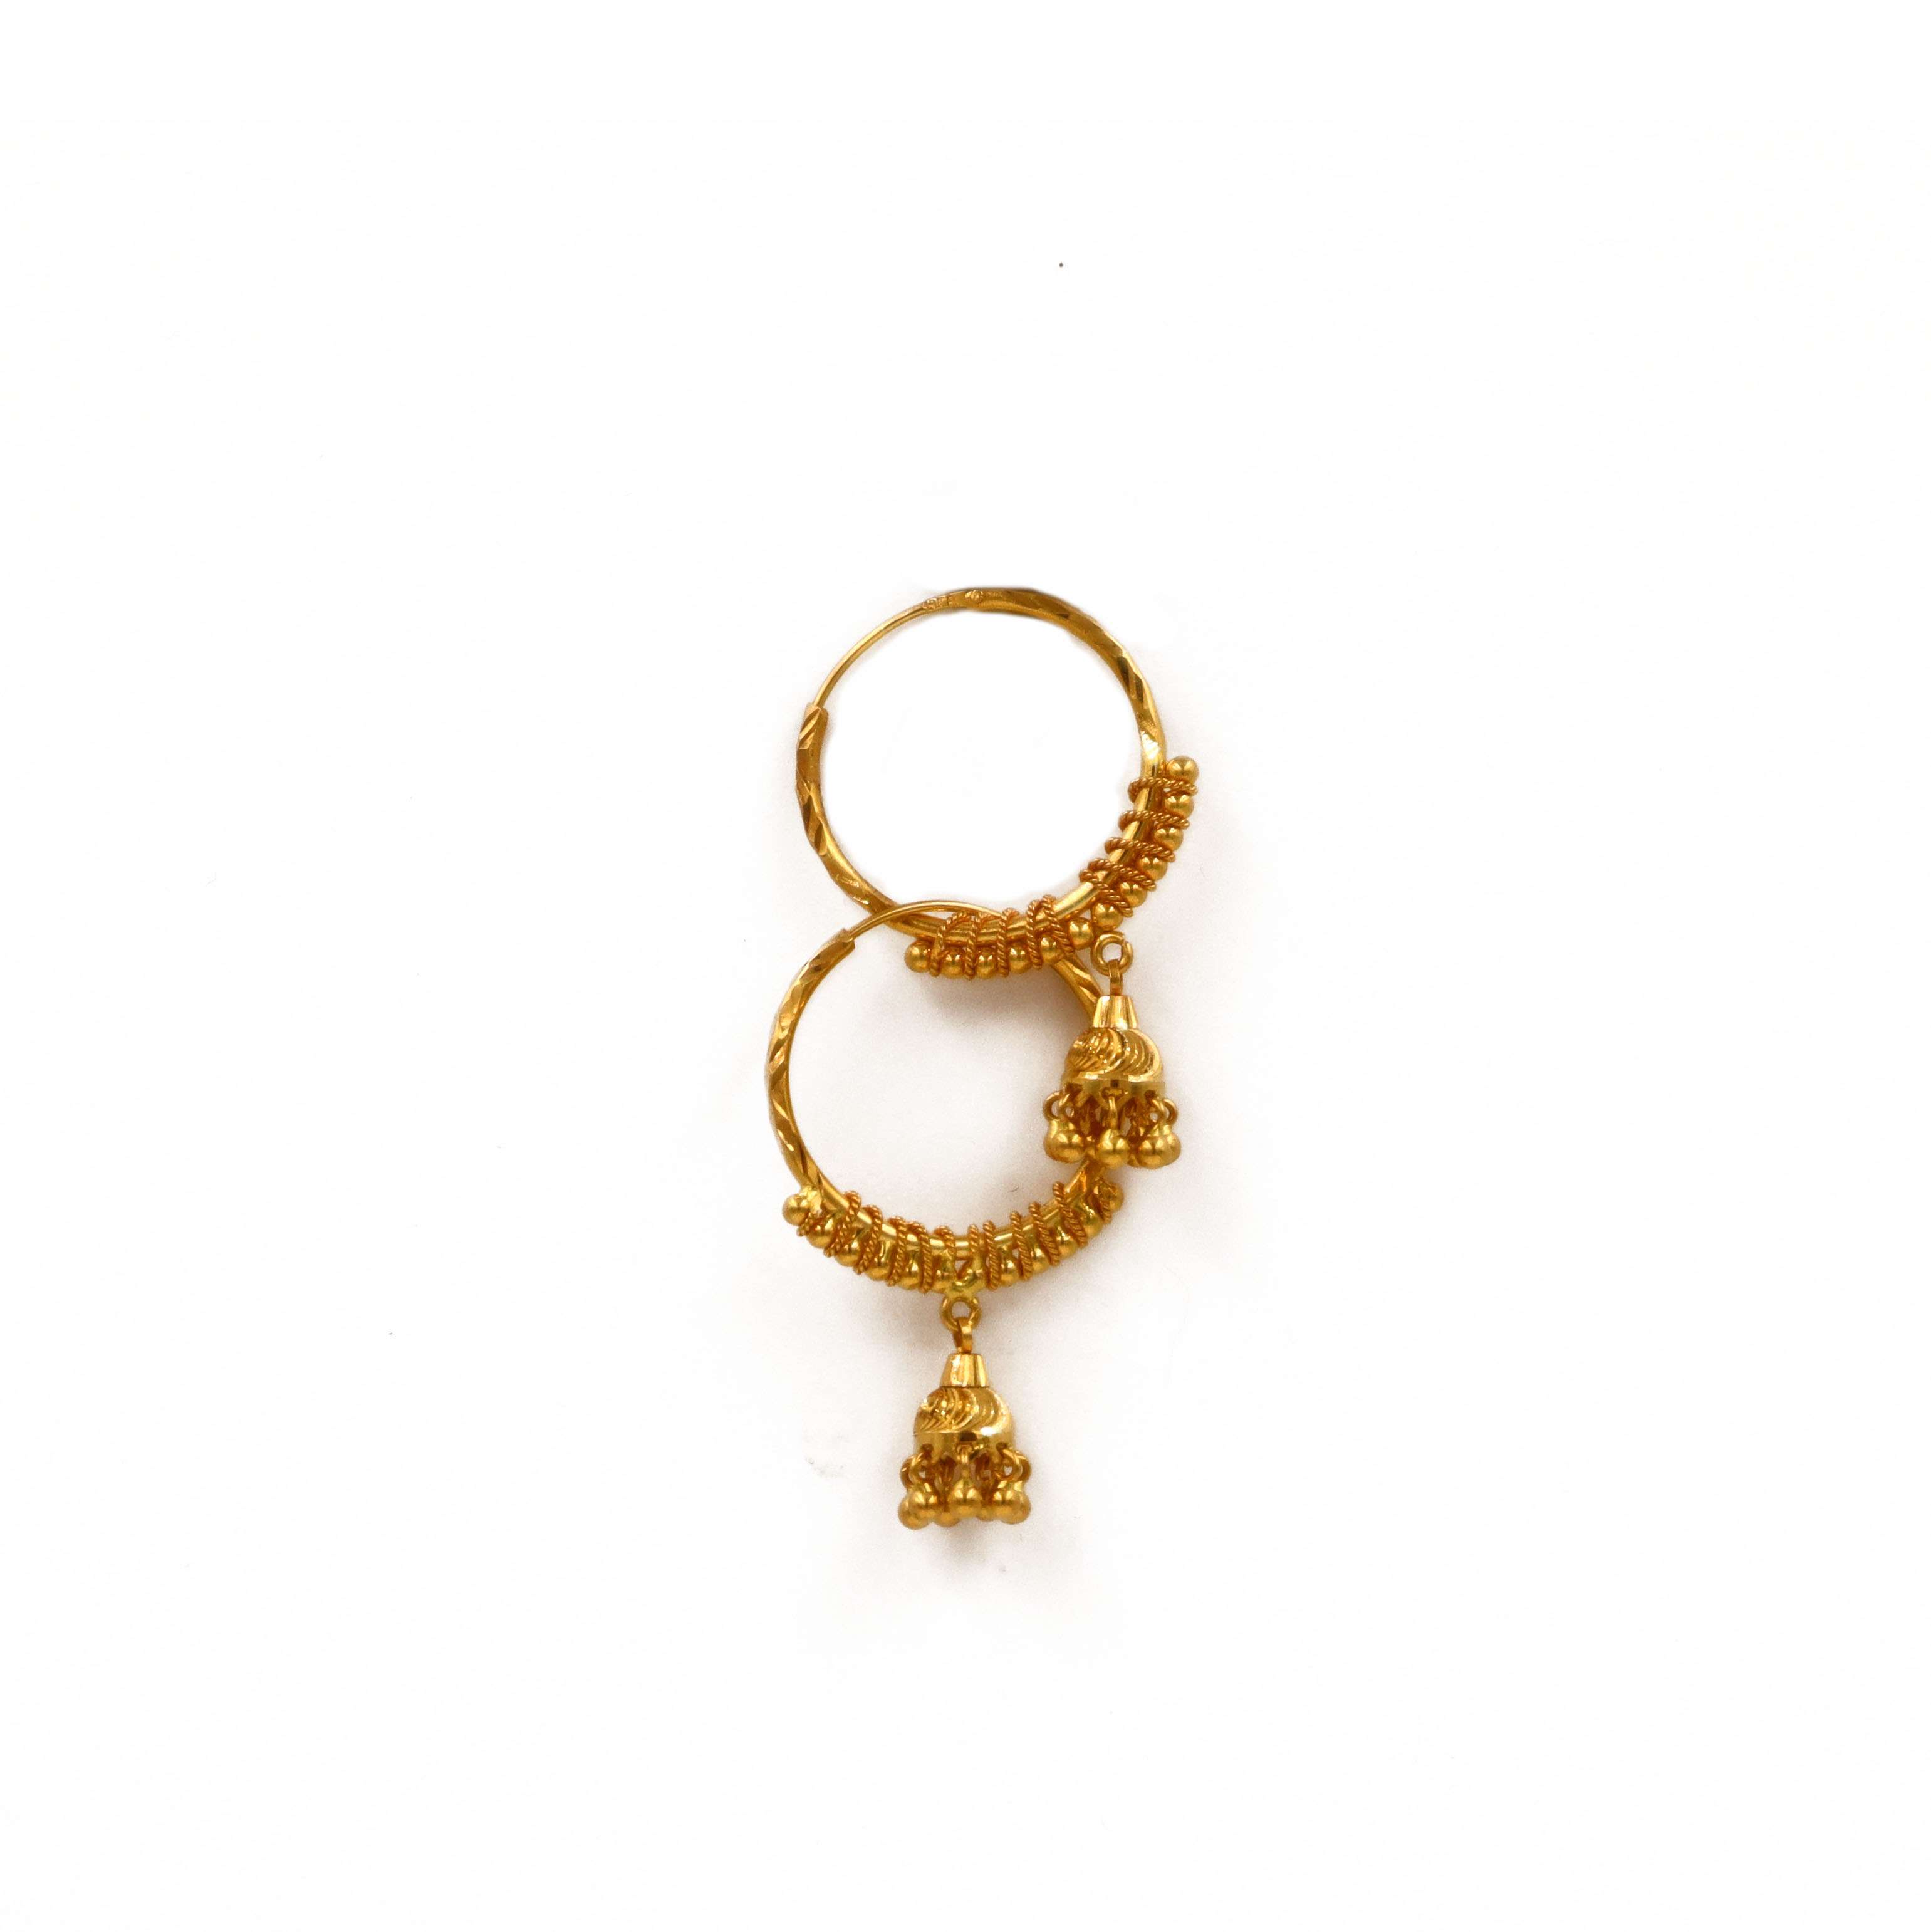 Buy Real Gold Design One Gram Gold Ring Type Bali Earrings for Women